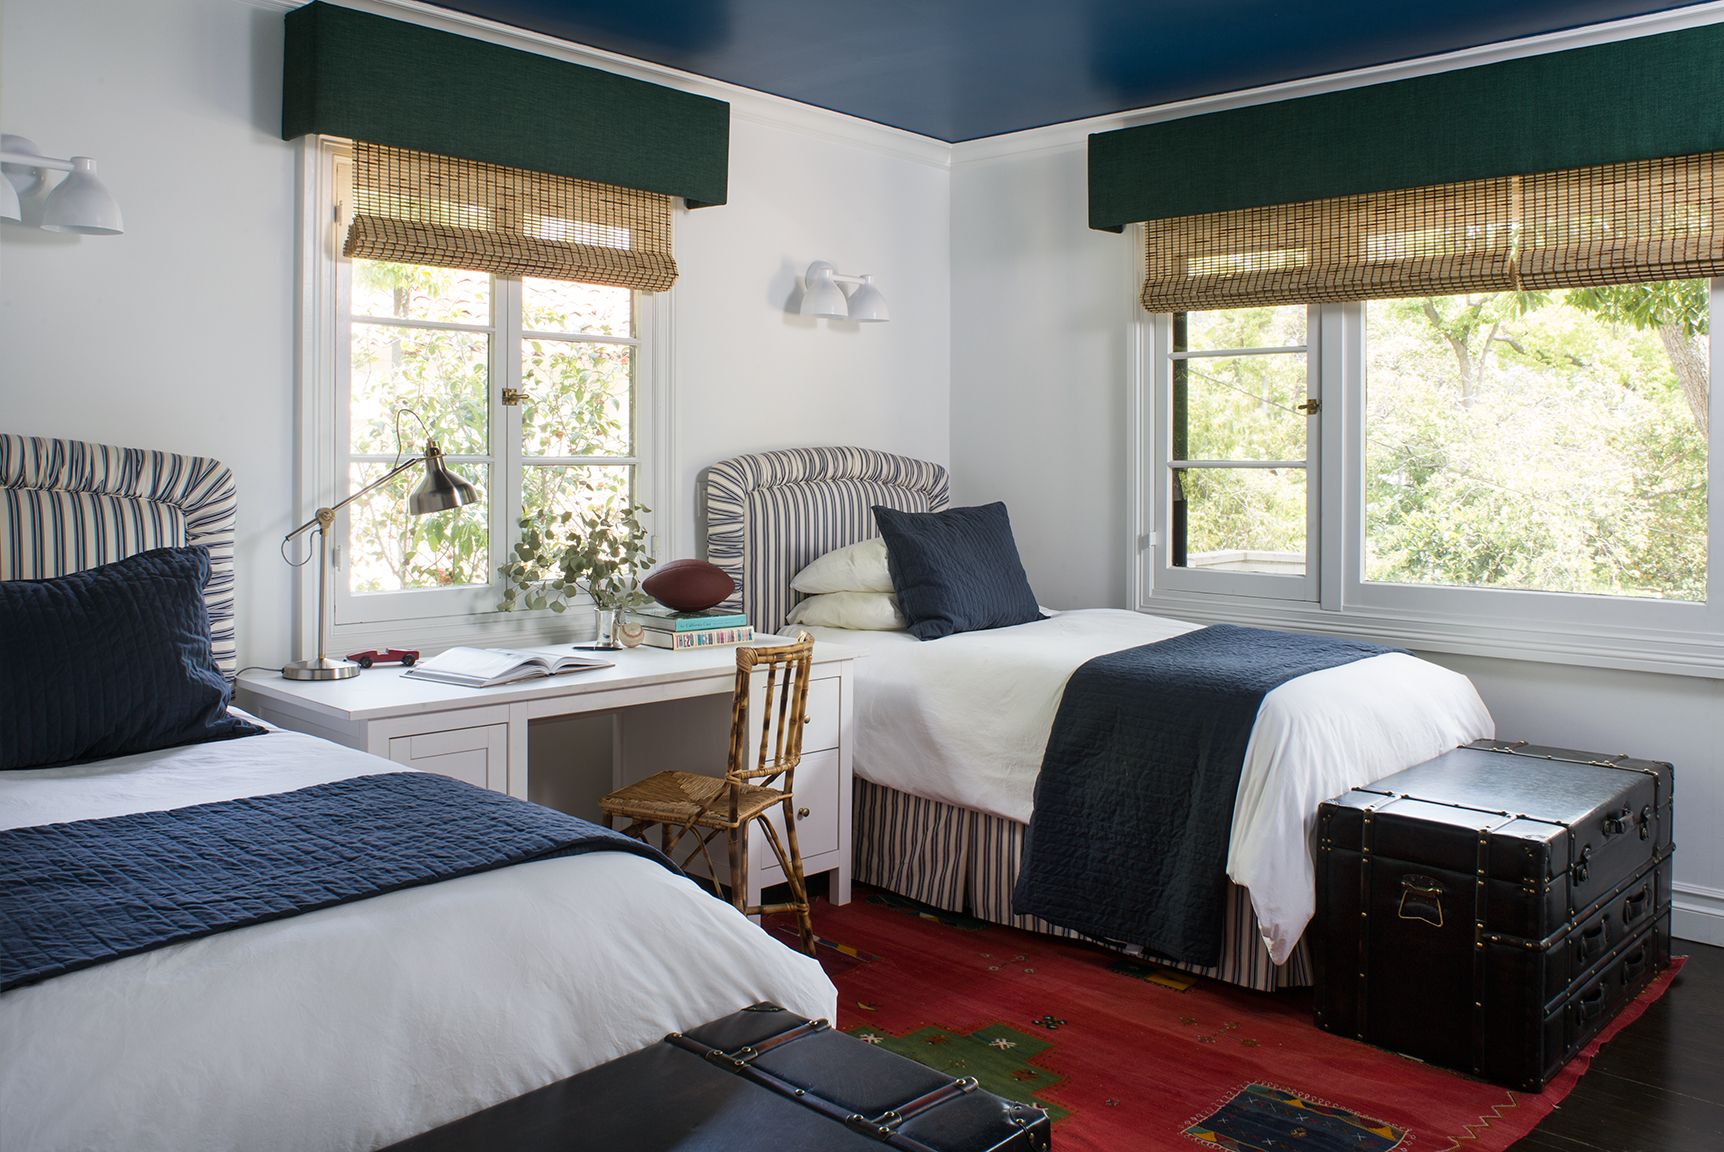 Phòng ngủ của hai anh em được bố mẹ sử dụng sơn trần màu xanh hải quân, một sắc màu phù hợp với phòng ngủ hơn cả vì nó mang lại cảm giác yên tĩnh, riêng tư và đặc biệt là cảm giác chở che, bảo bọc.